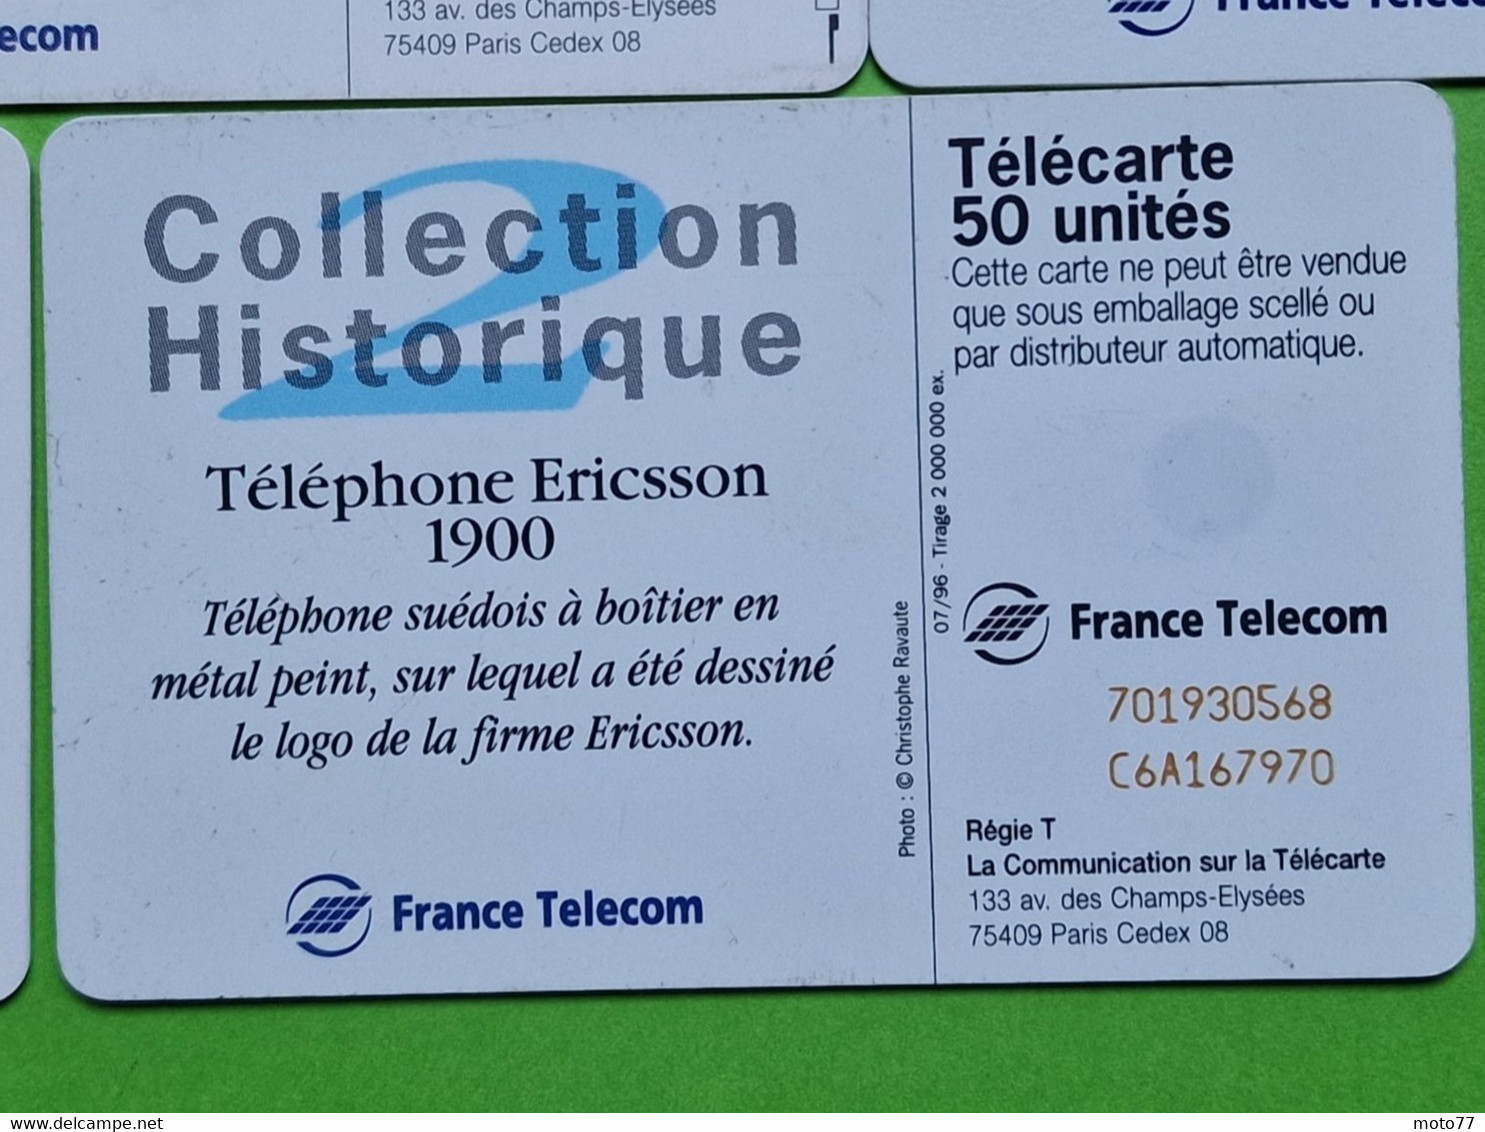 Lot série des 23 cartes téléphonique de France - VIDE - Télécarte Cabine téléphone - Histoire COMBINES de TÉLÉPHONE 1998